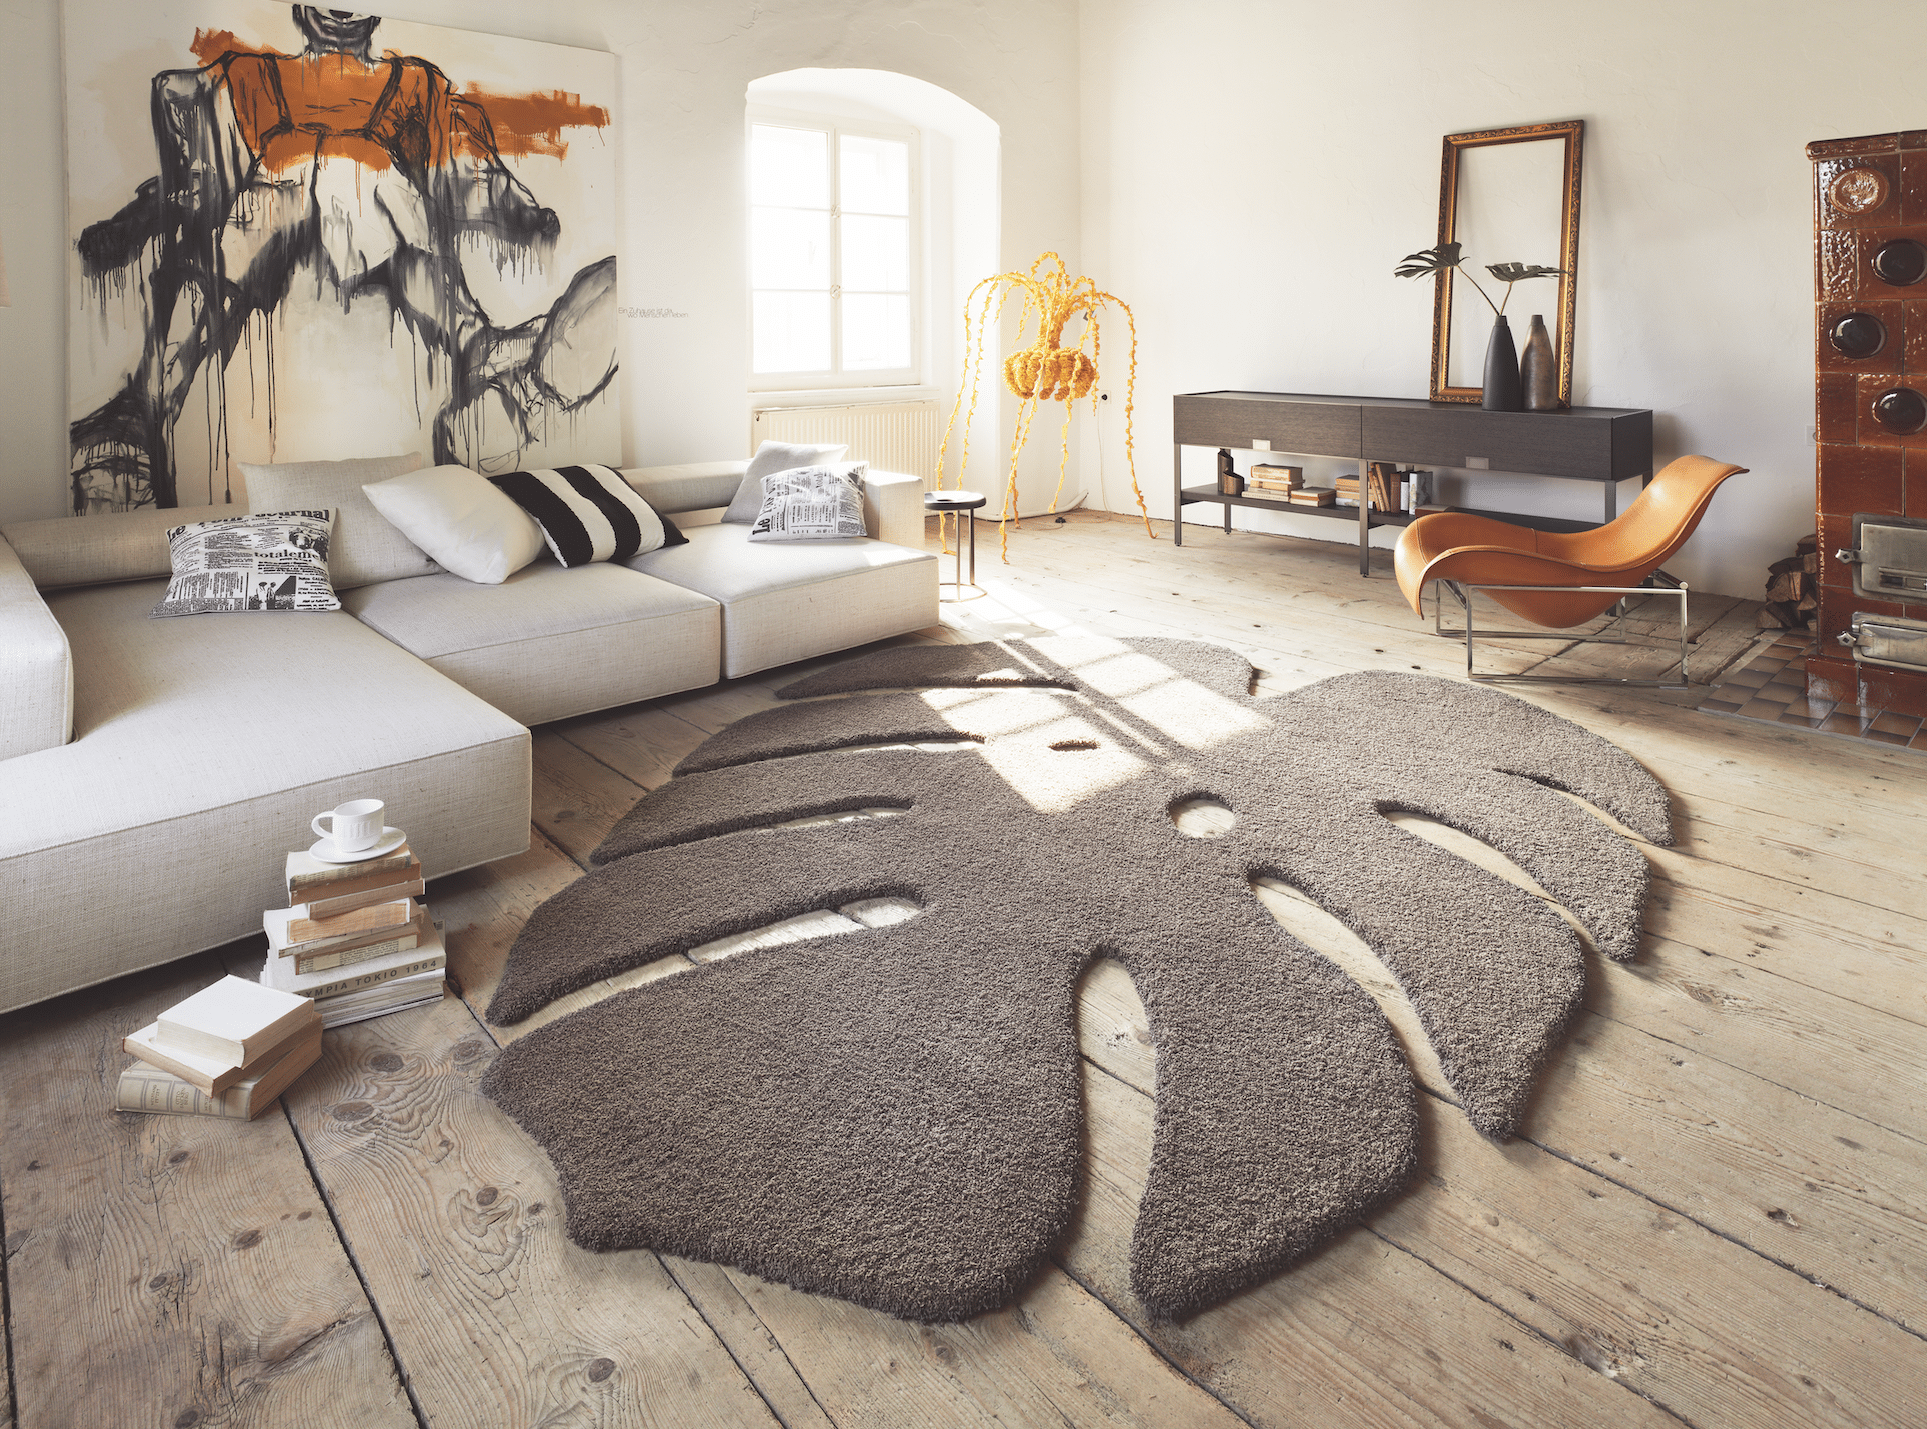 WOHNHAUS Grill & Ronacher zeigt ein modernes Wohnzimmer mit einem freiliegenden, braunen Teppich in der Form eines Blattes und einer hellen Couch von Landegger.